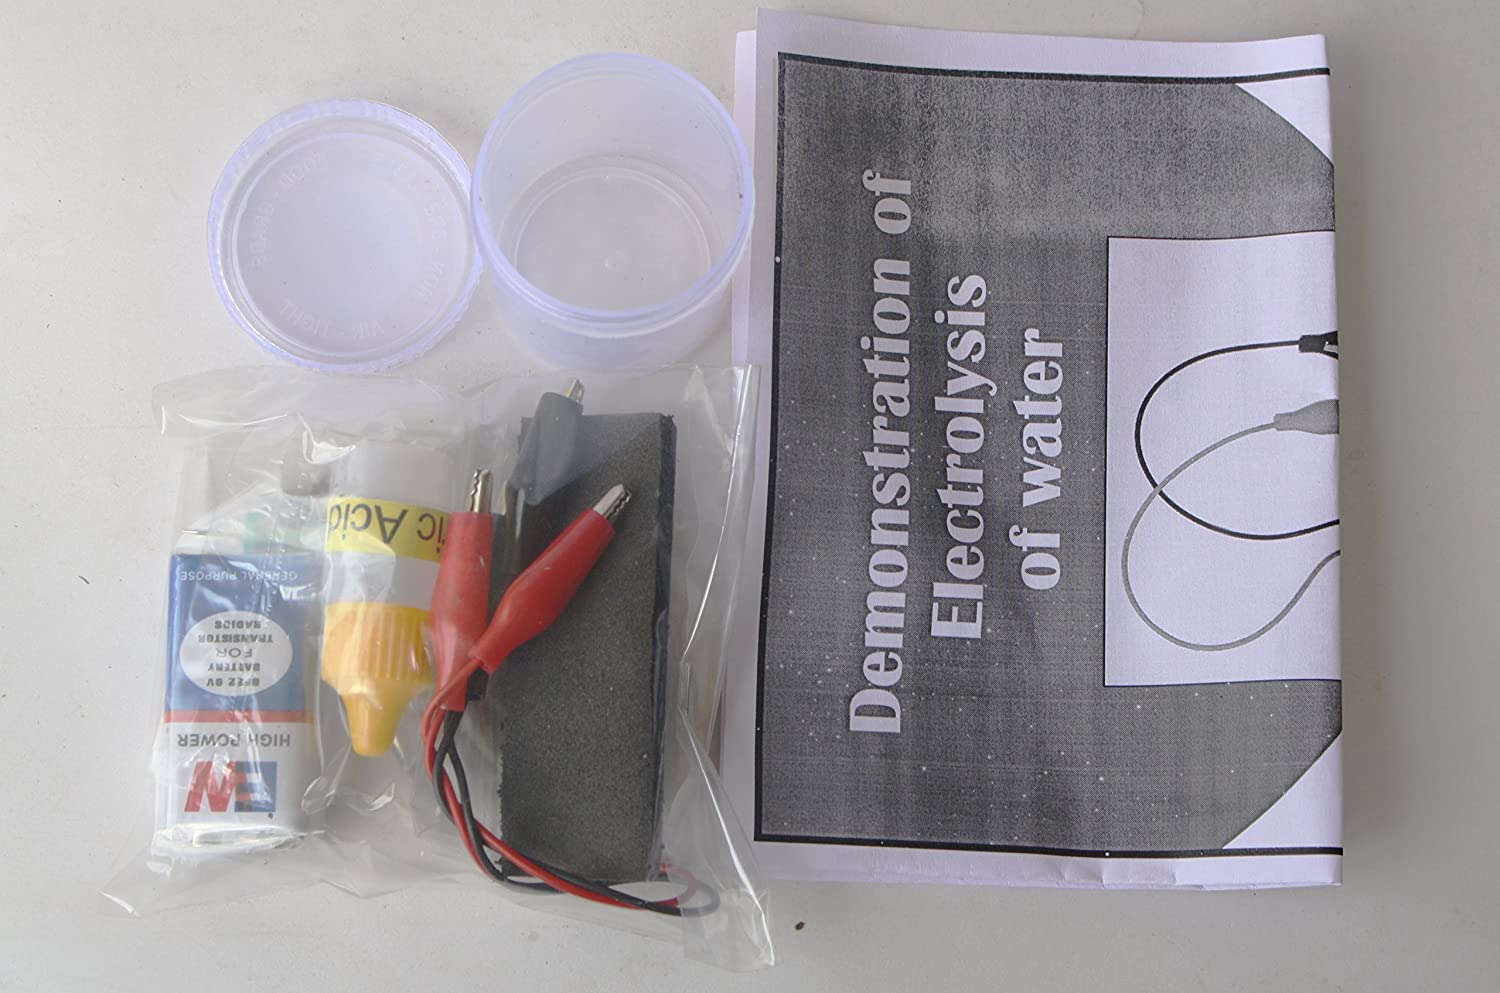 Electrolysis Demonstration Kit